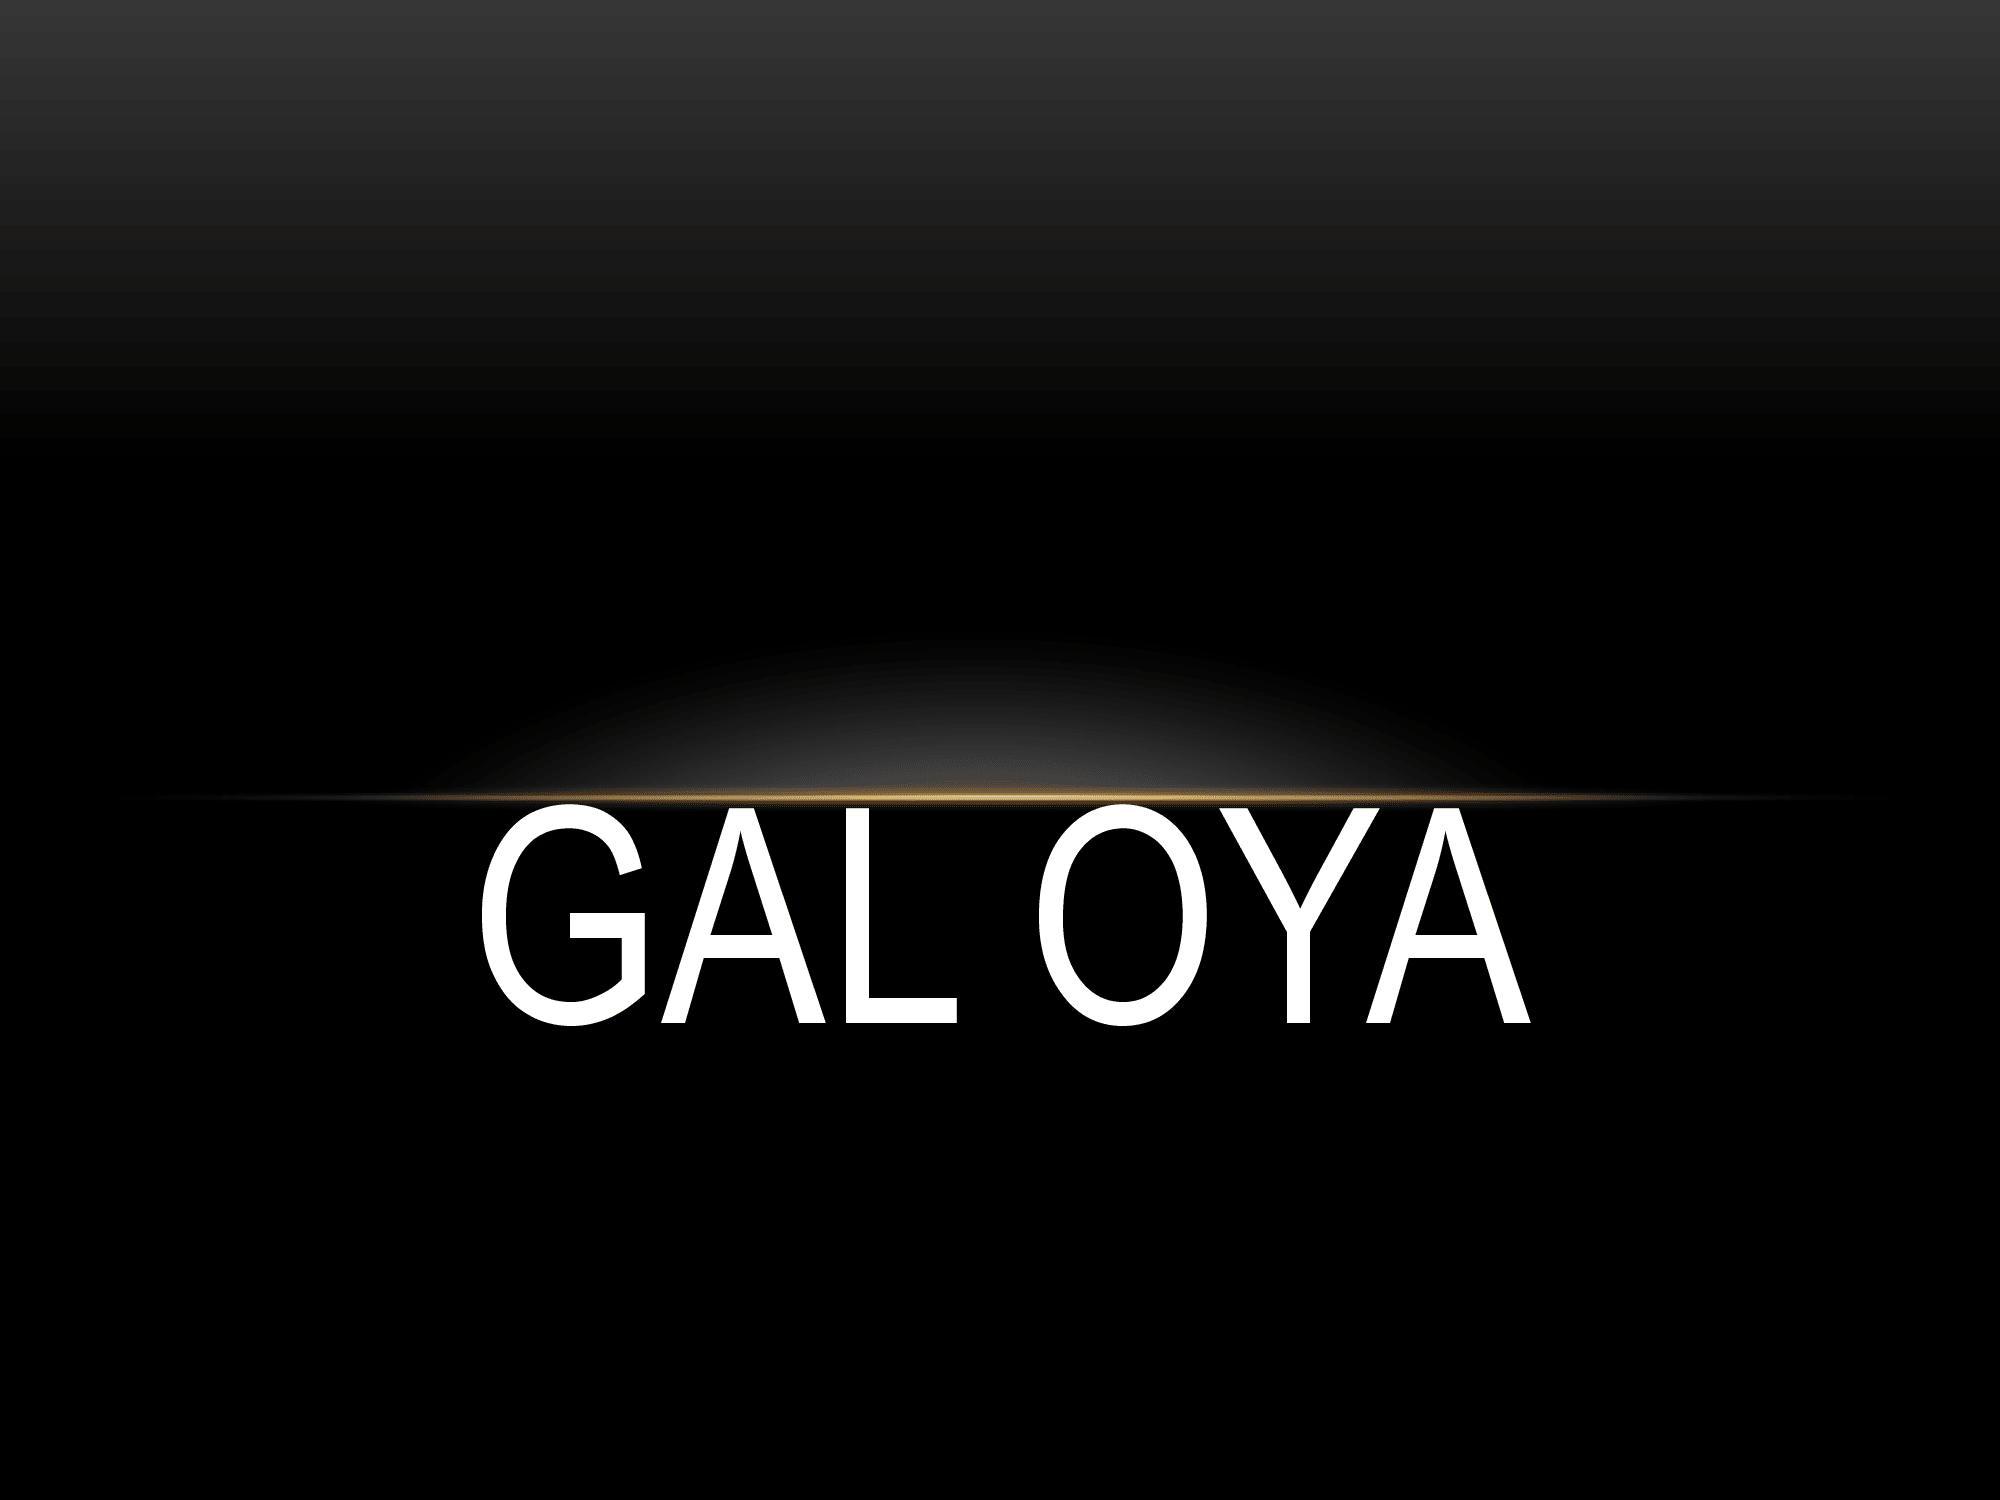 GalOya